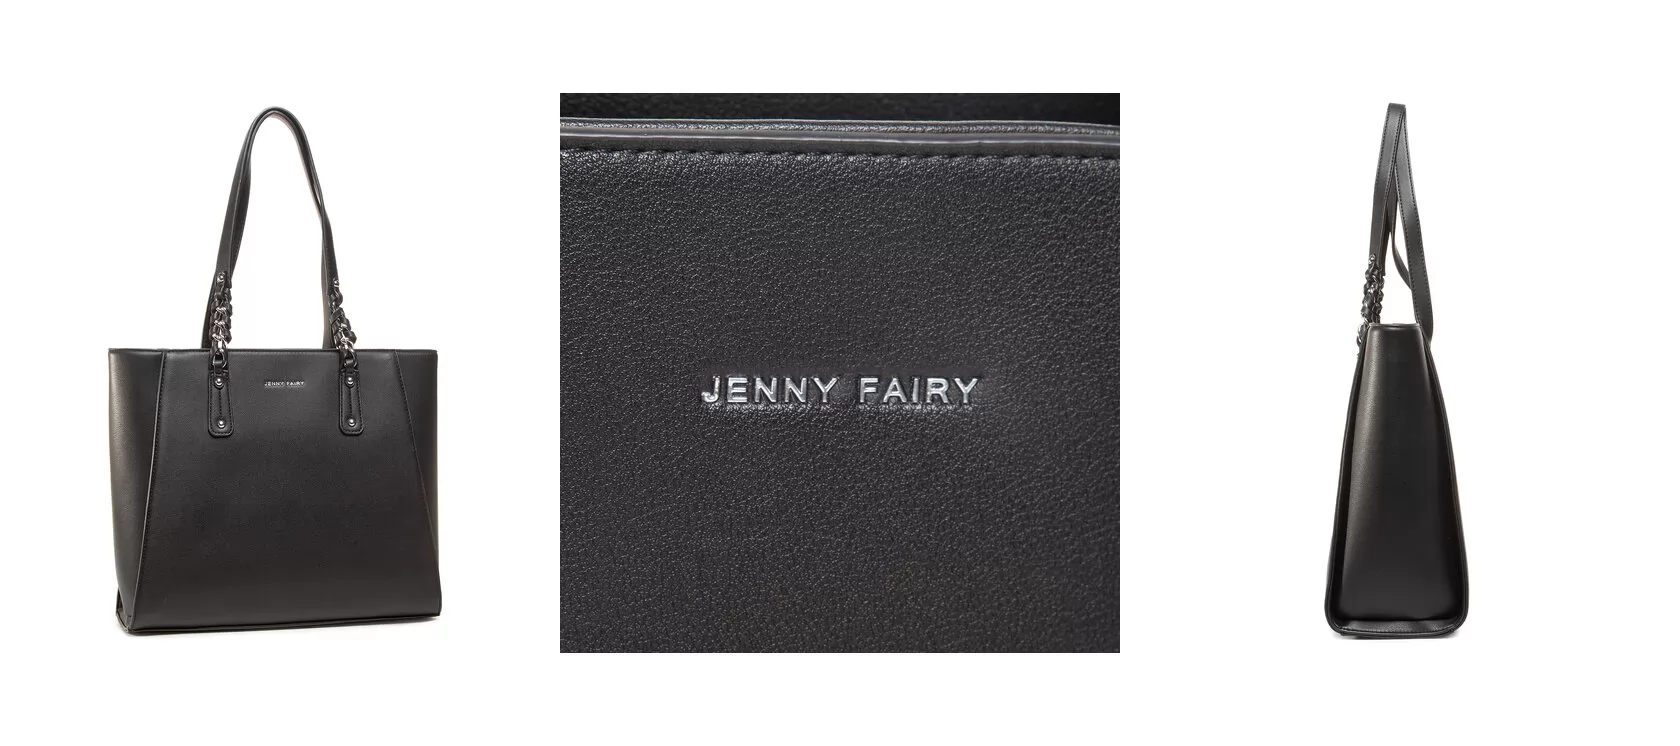 Jenny Fairy Torebka RX3272 Czarny